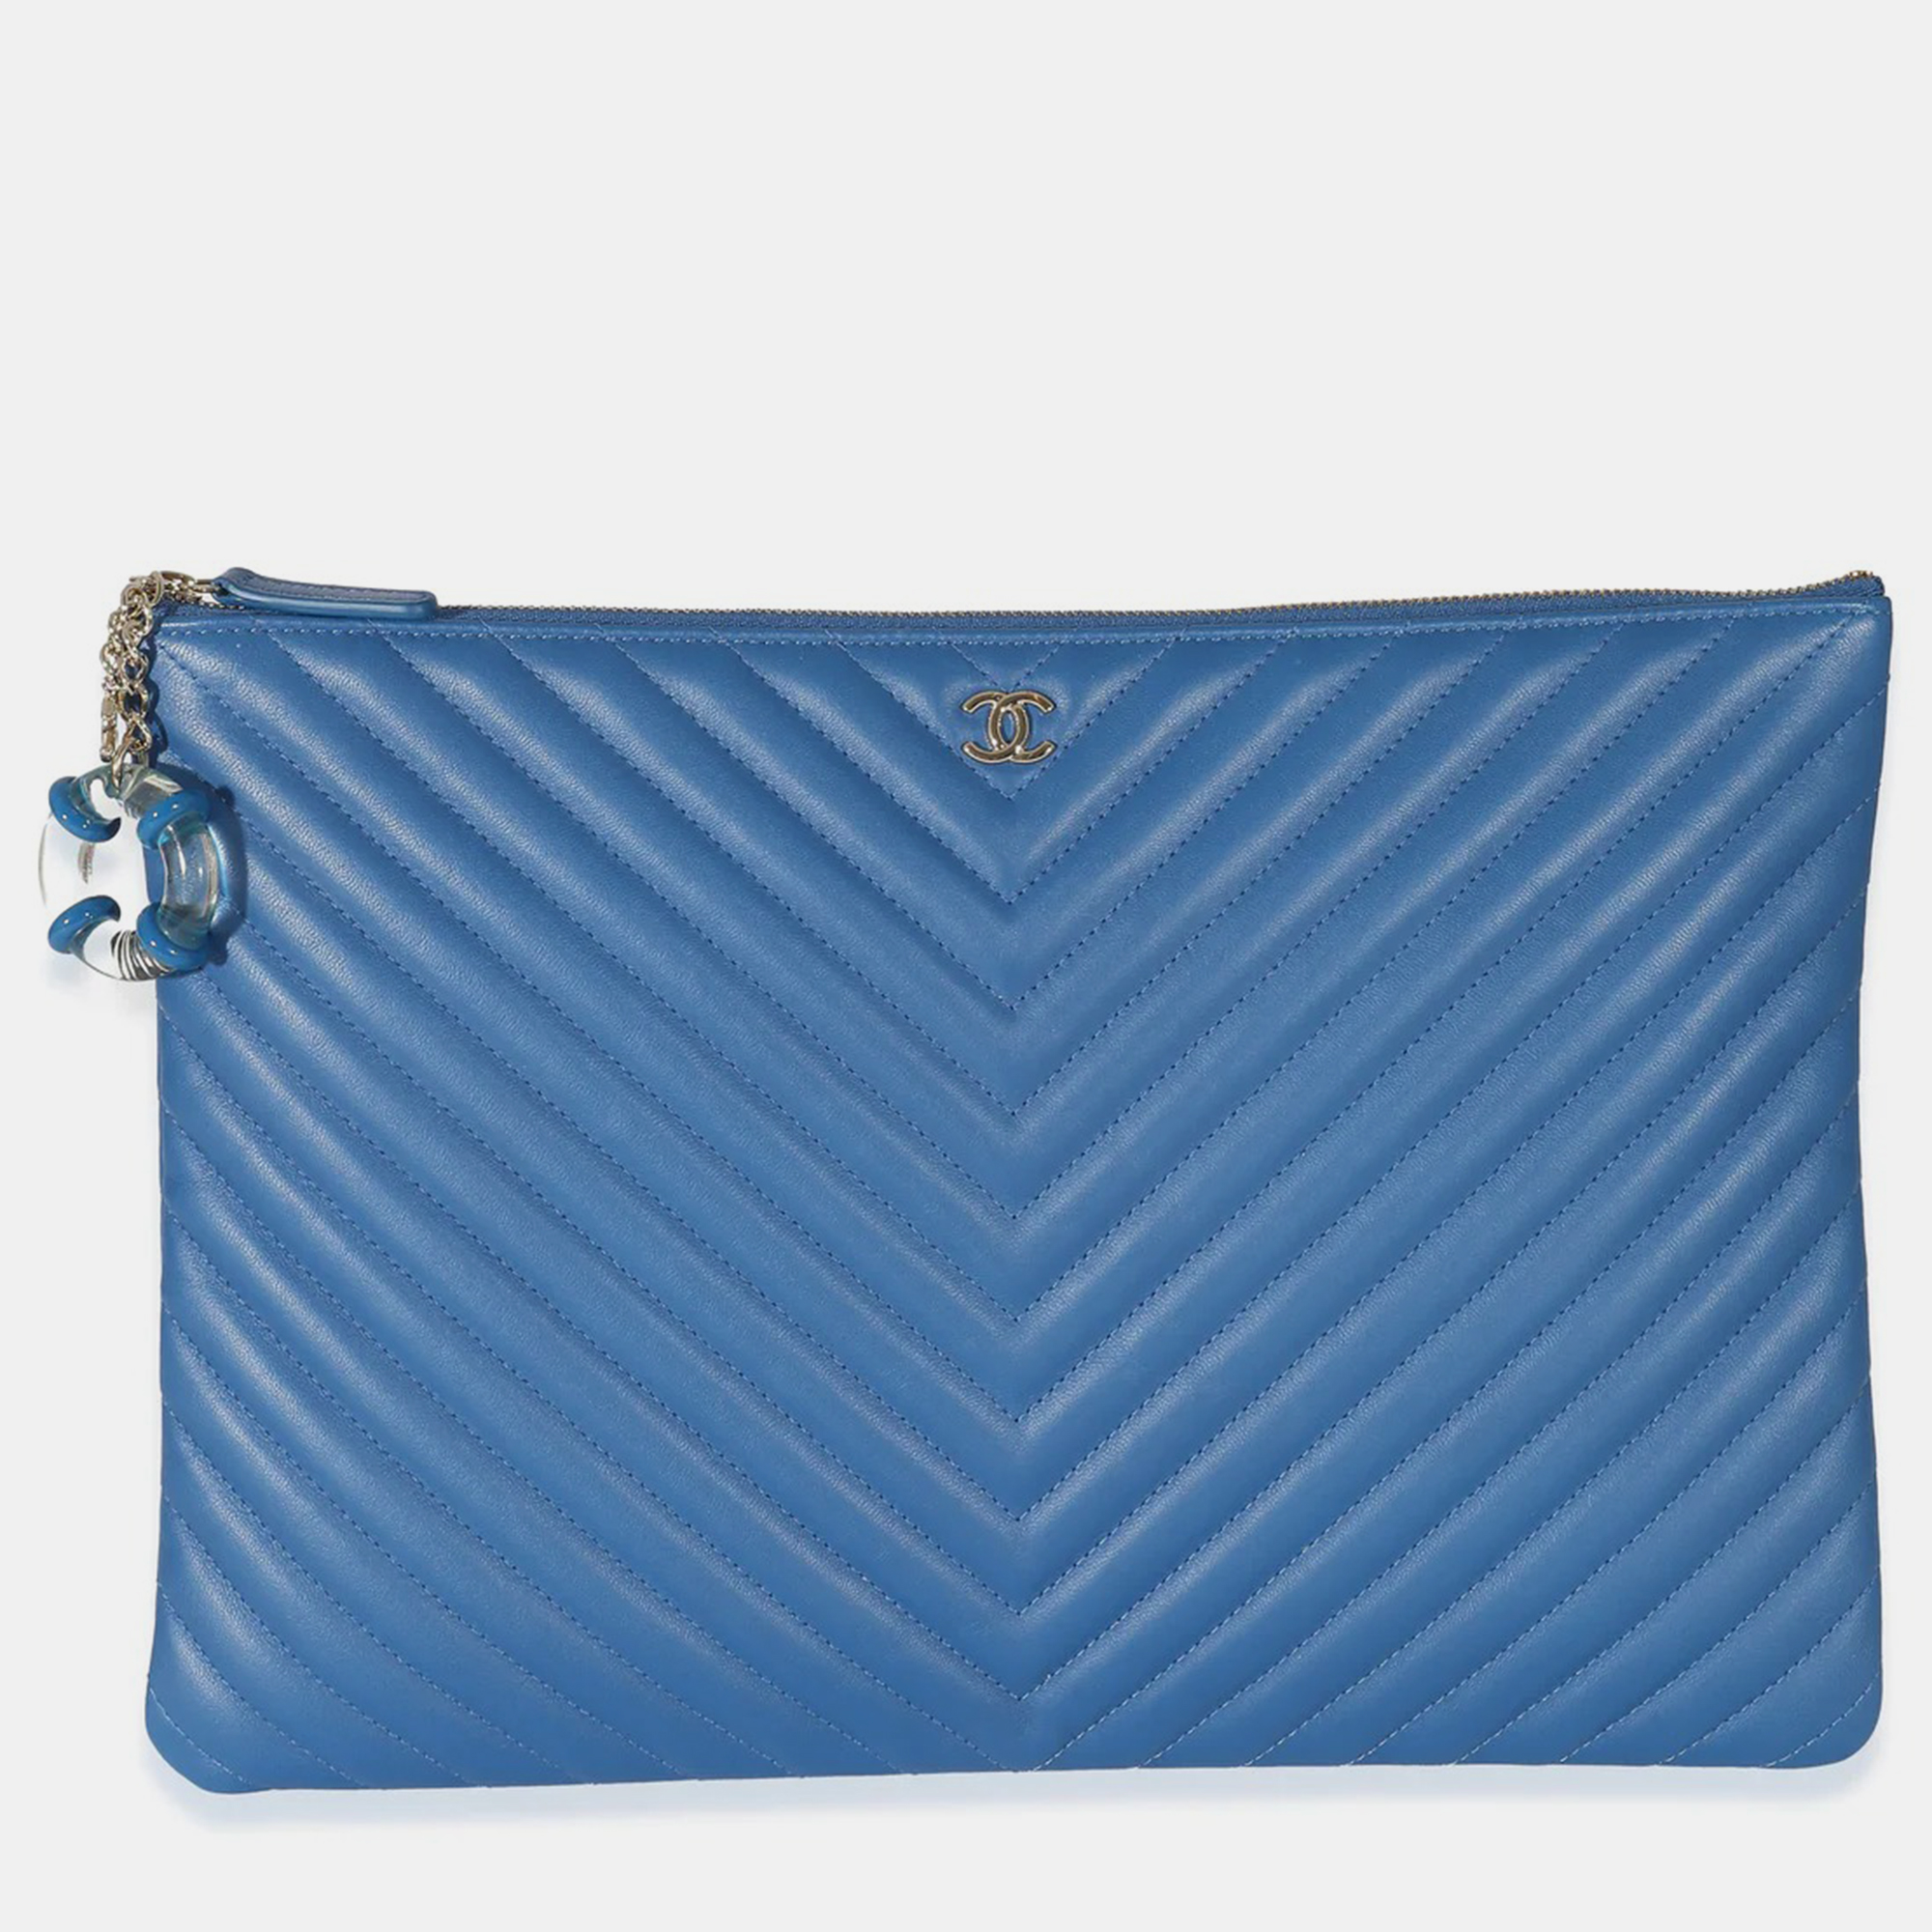 Chanel Blue Leather Medium Chevron O-Case Clutch Bag